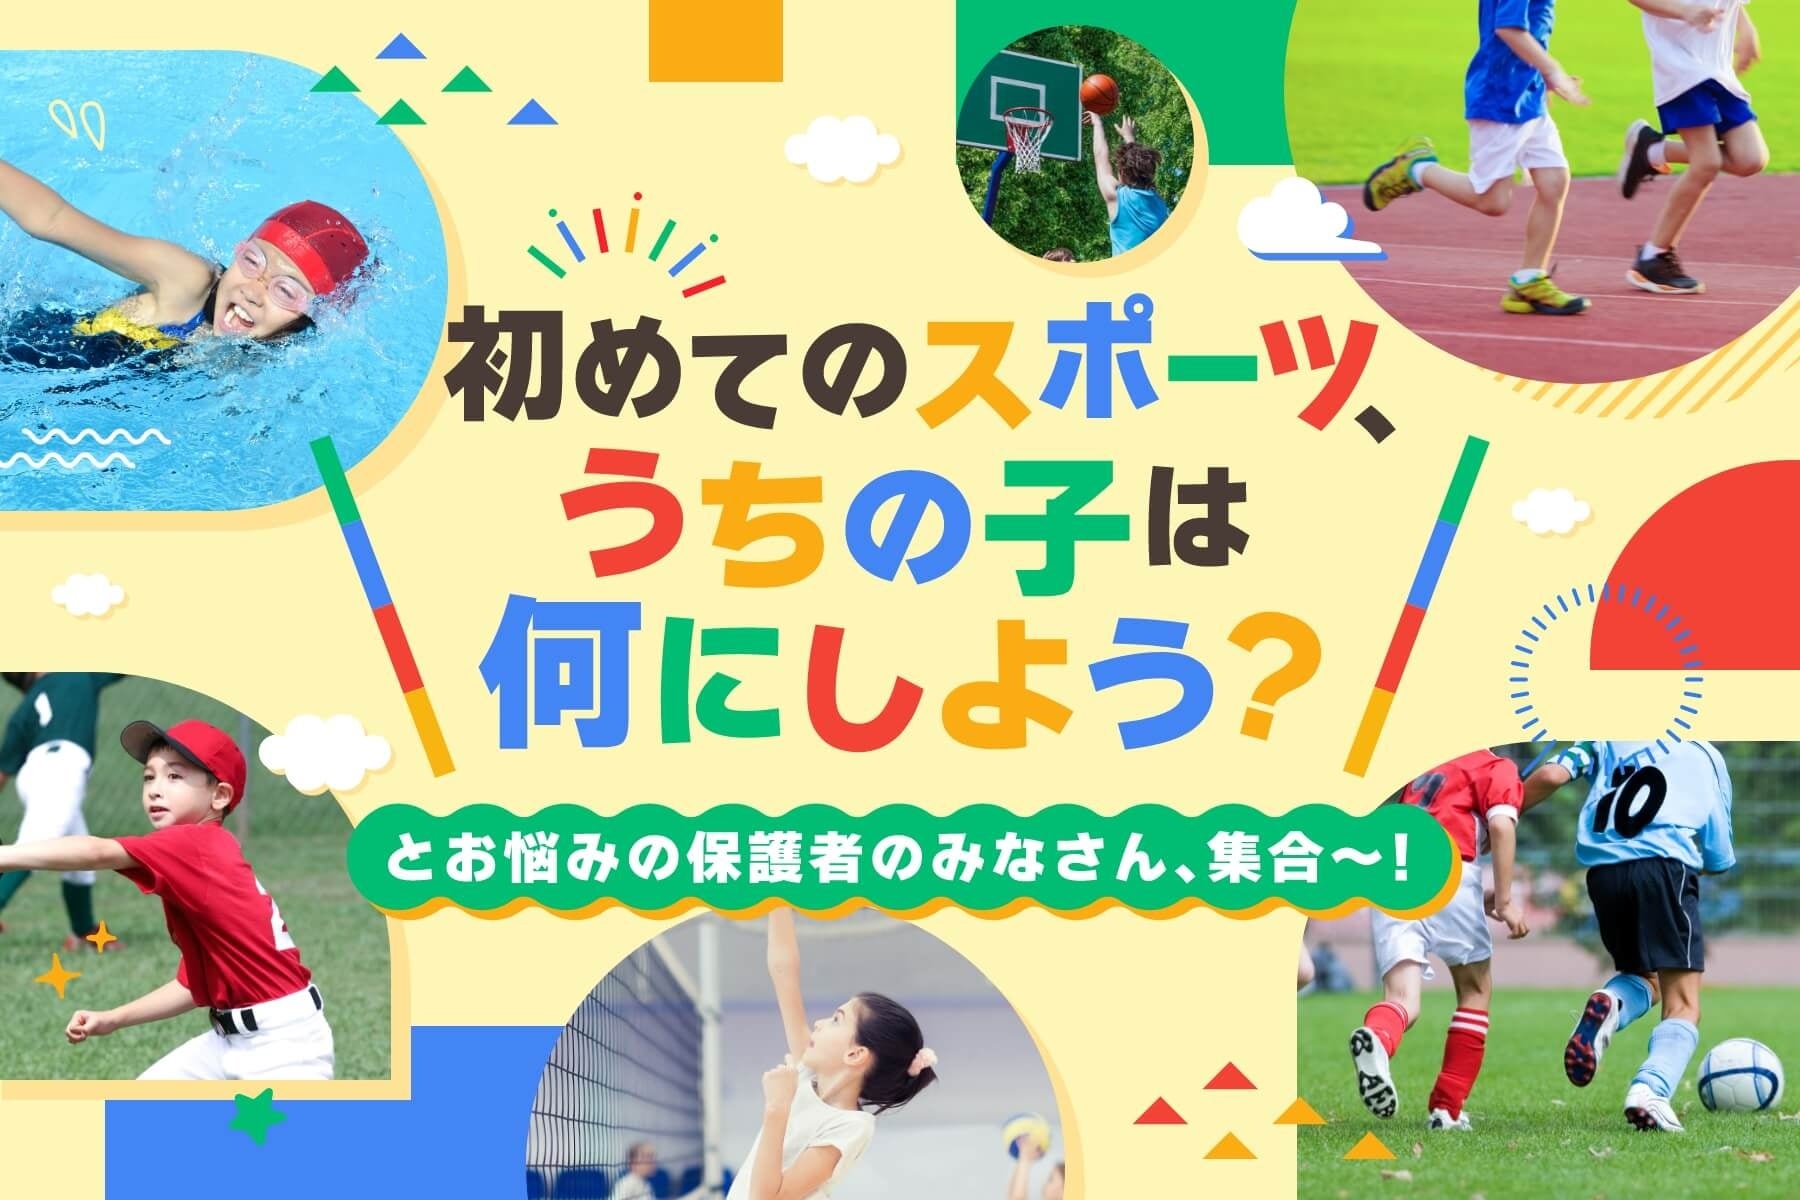 スポーツデポ・アルペンは「楽しくなくちゃスポーツじゃない」をキーワードにスポーツを楽しみたい全ての人を応援します　Alpen TOKYOでは吉本芸人による限定イベントも開催のサブ画像4